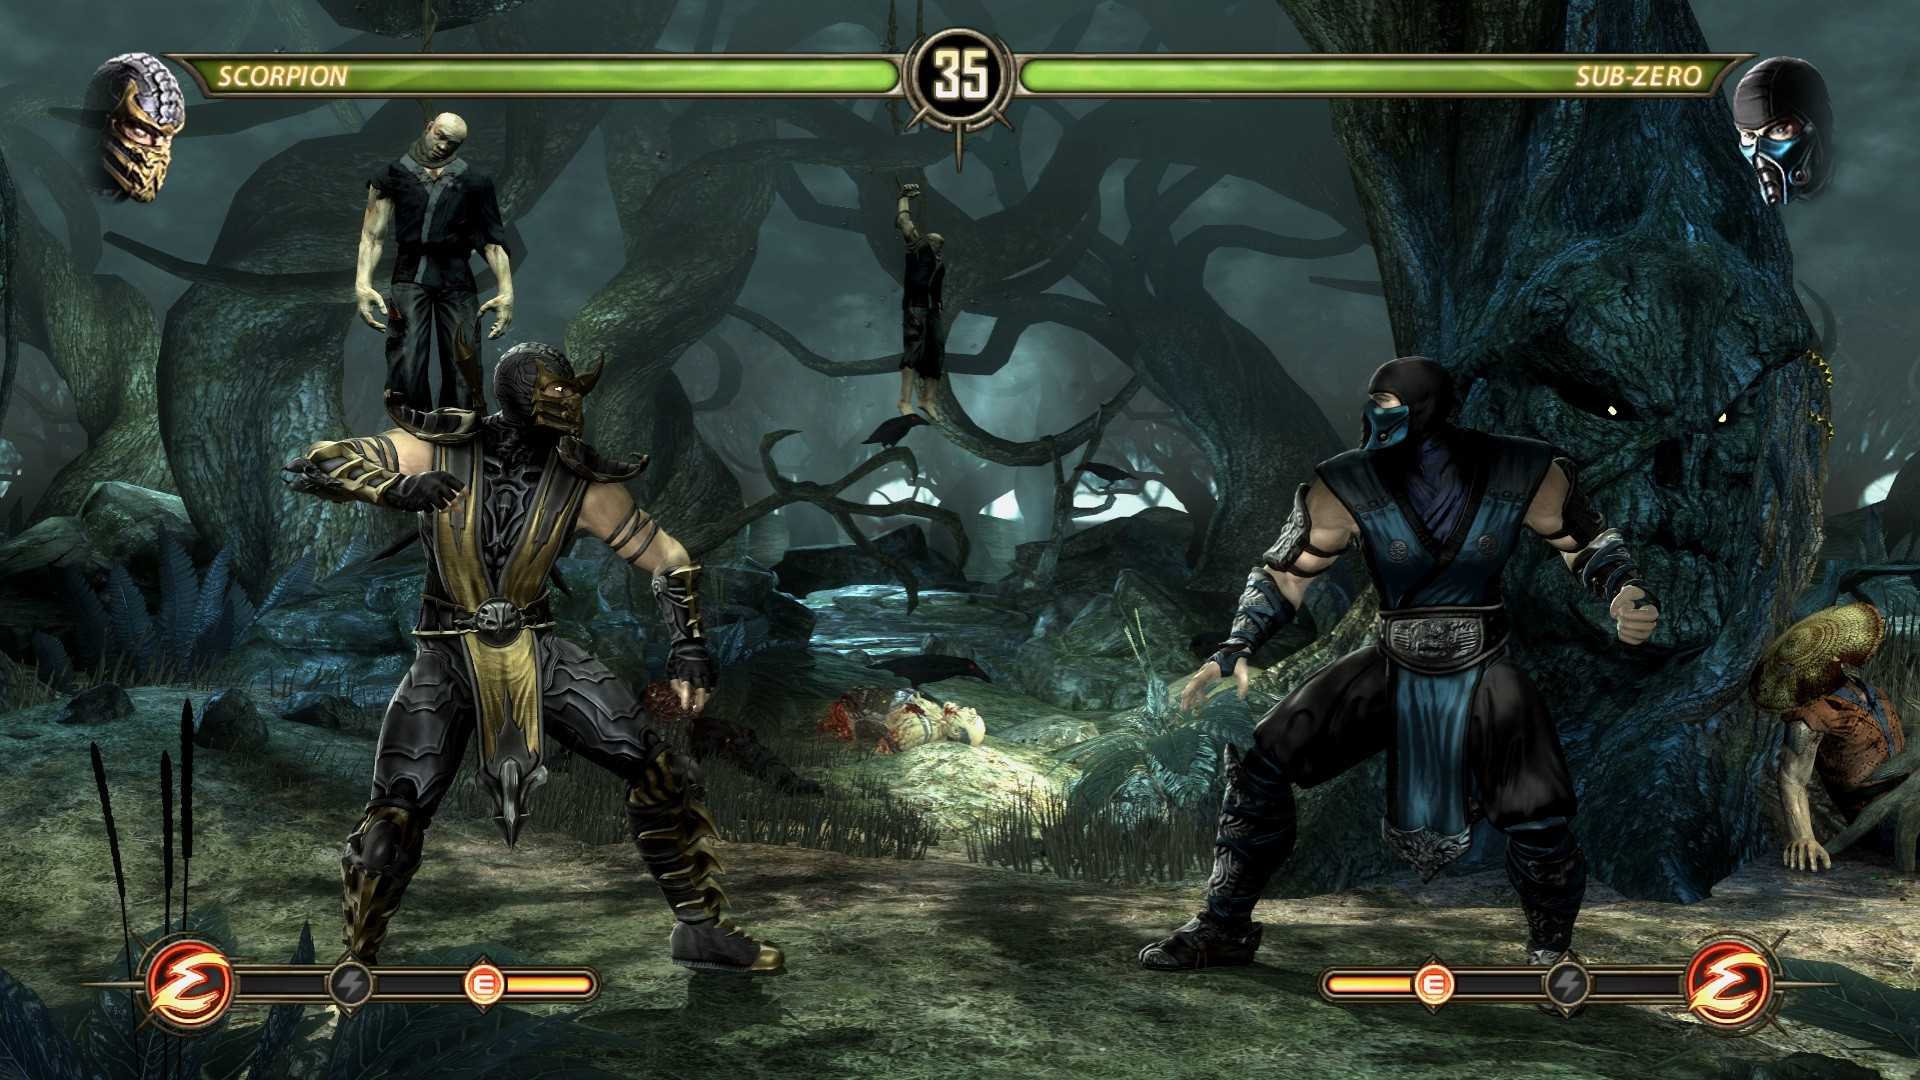 Мортал комбат игры xbox. MK Komplete Edition Xbox 360. Mortal Kombat 2011. Мортал комбат на Xbox 360. Mortal Kombat Komplete Edition Xbox 360.